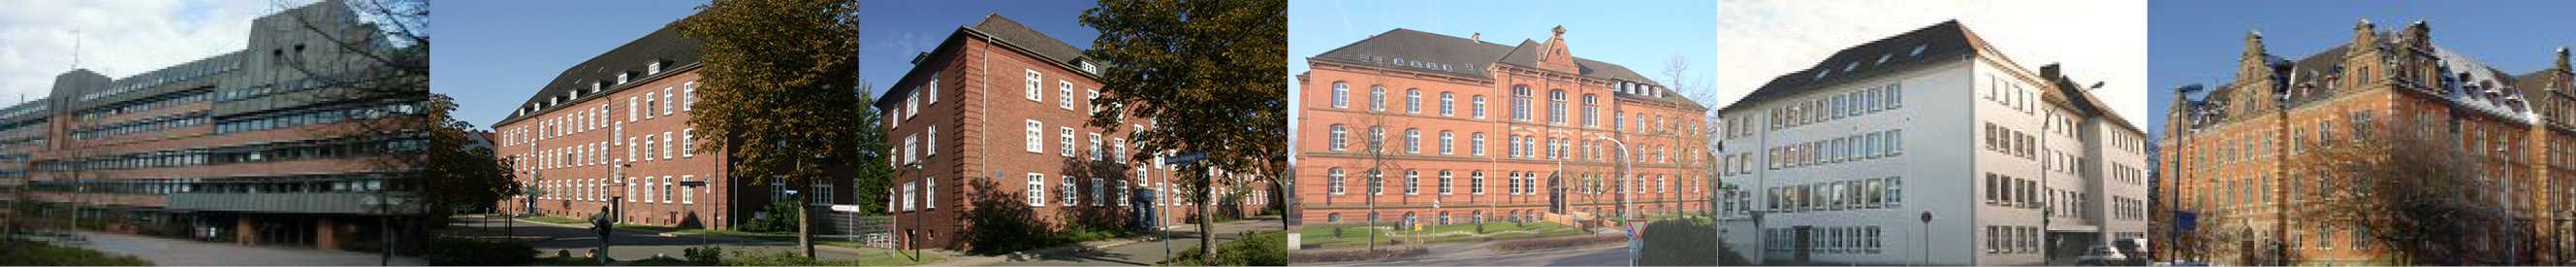 Dienstgebäude in Lüneburg, Verden, Bremerhaven und Stade